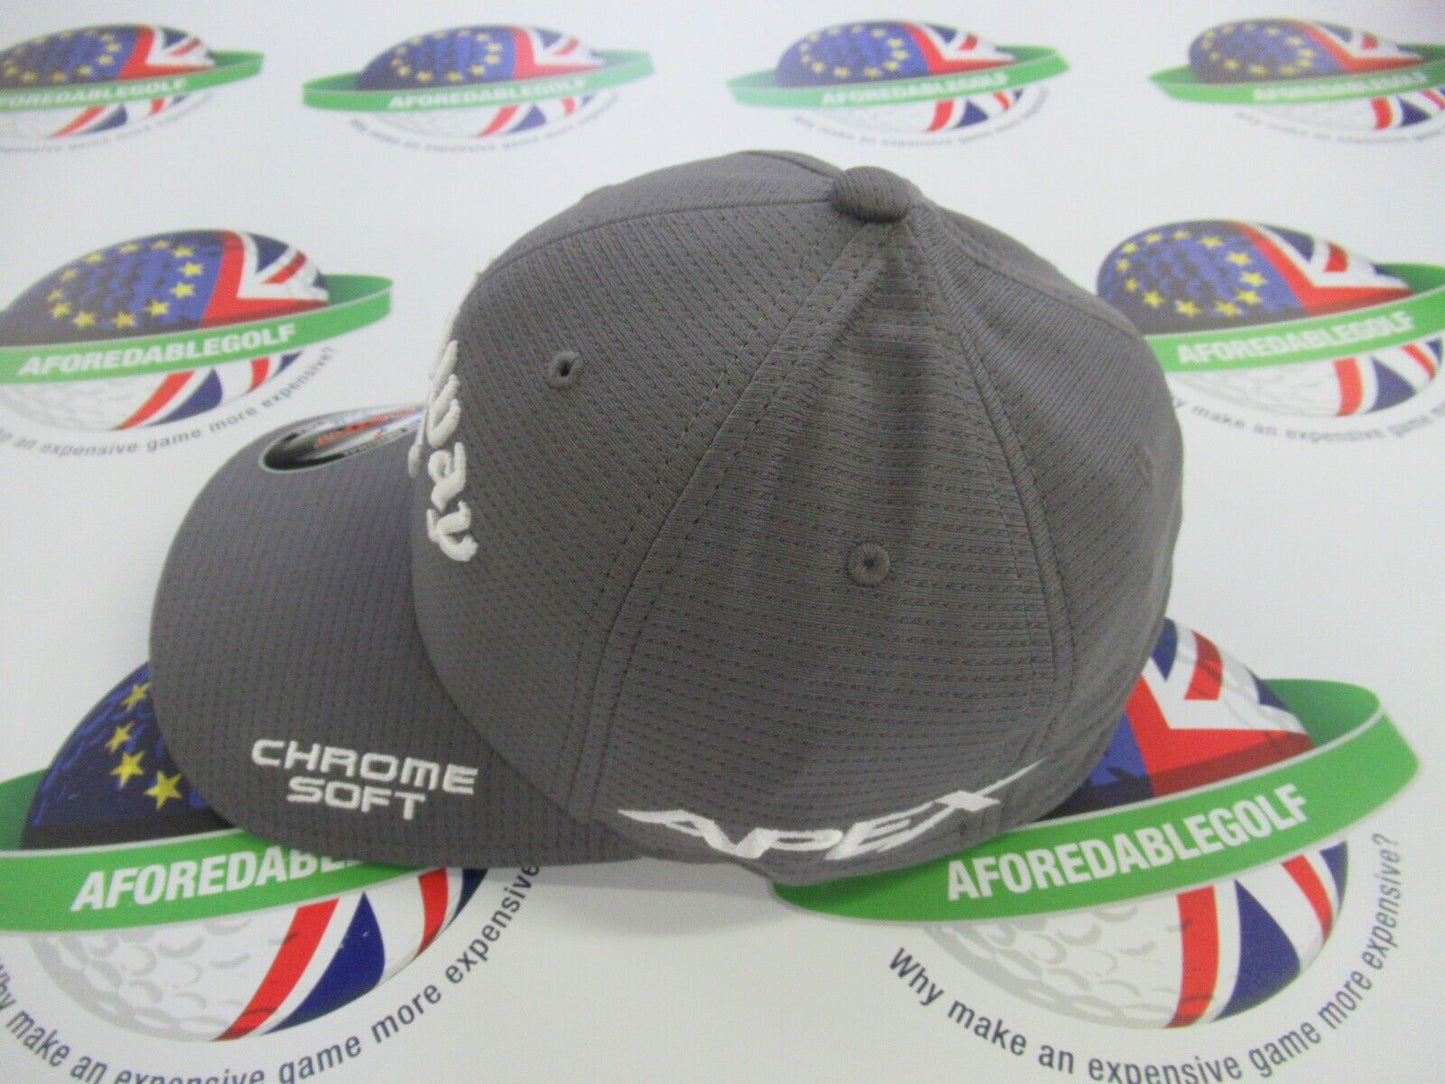 callaway golf flexfit tour authentic grey cap epic apex odyssey chrome soft s/m